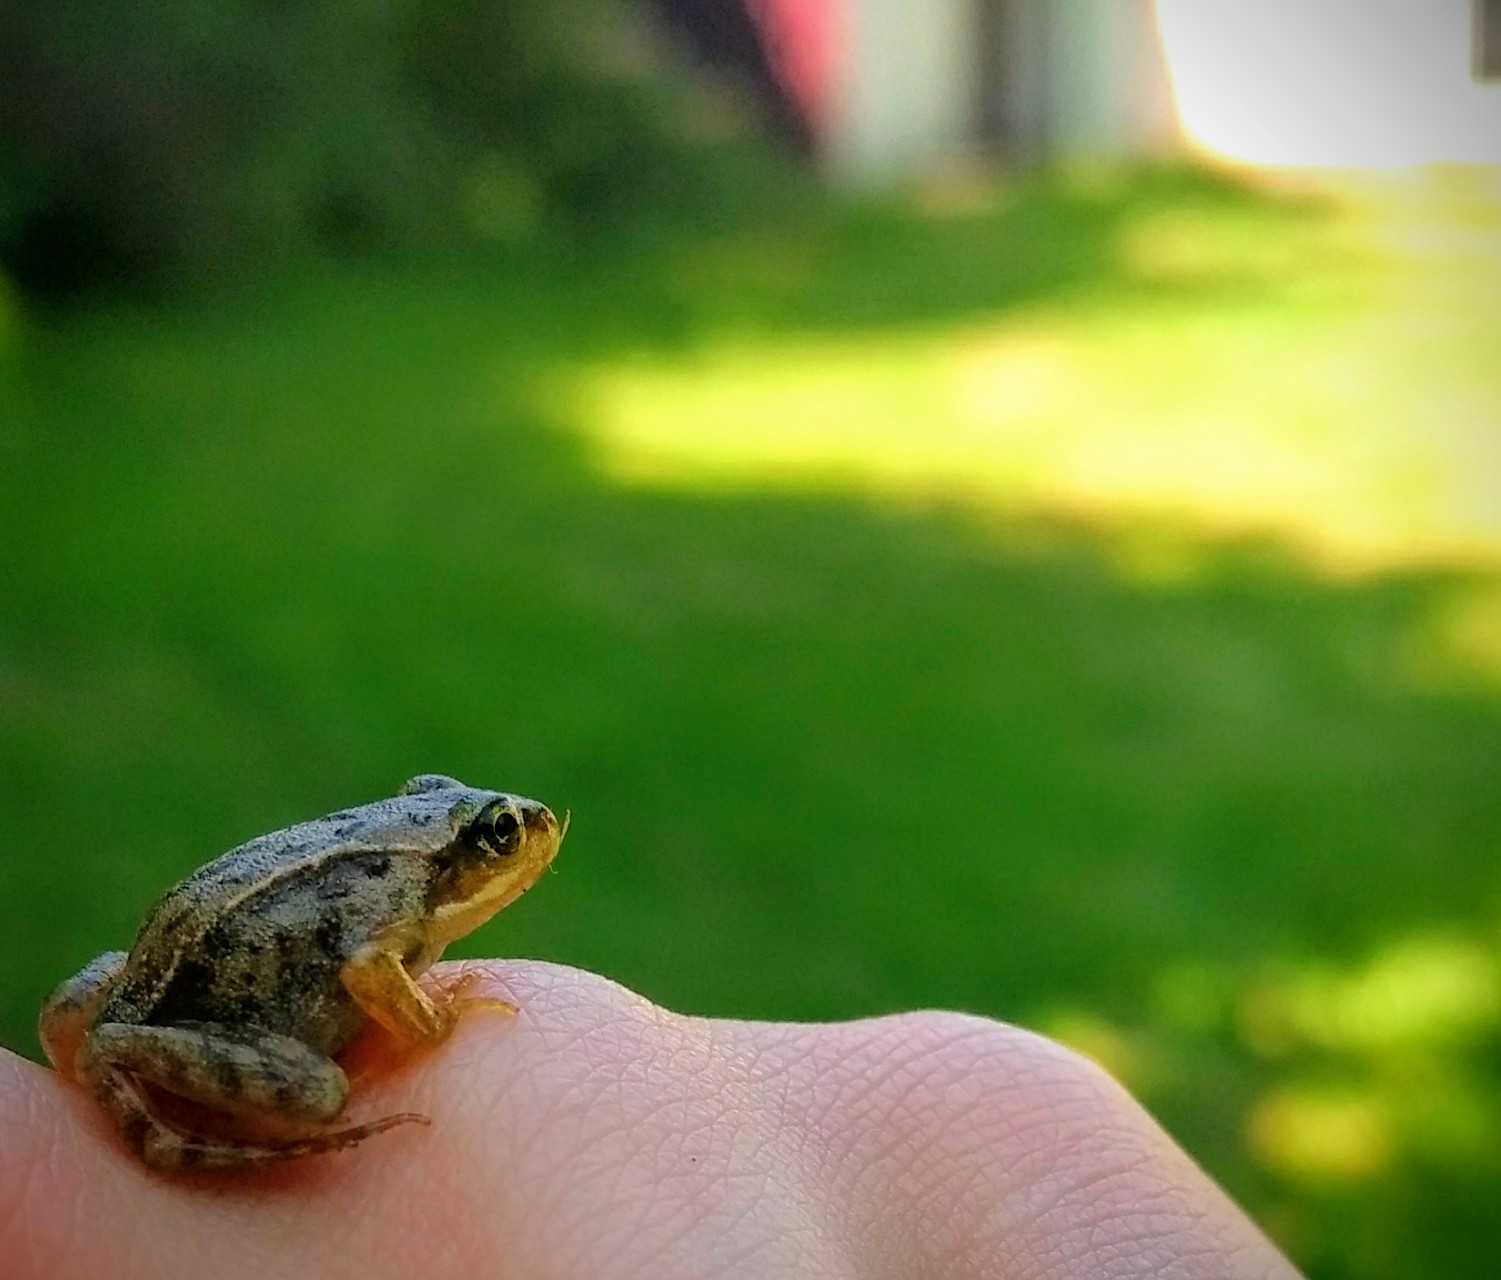 Cute Baby Frog I Found in my Garden - Photos — Steemit